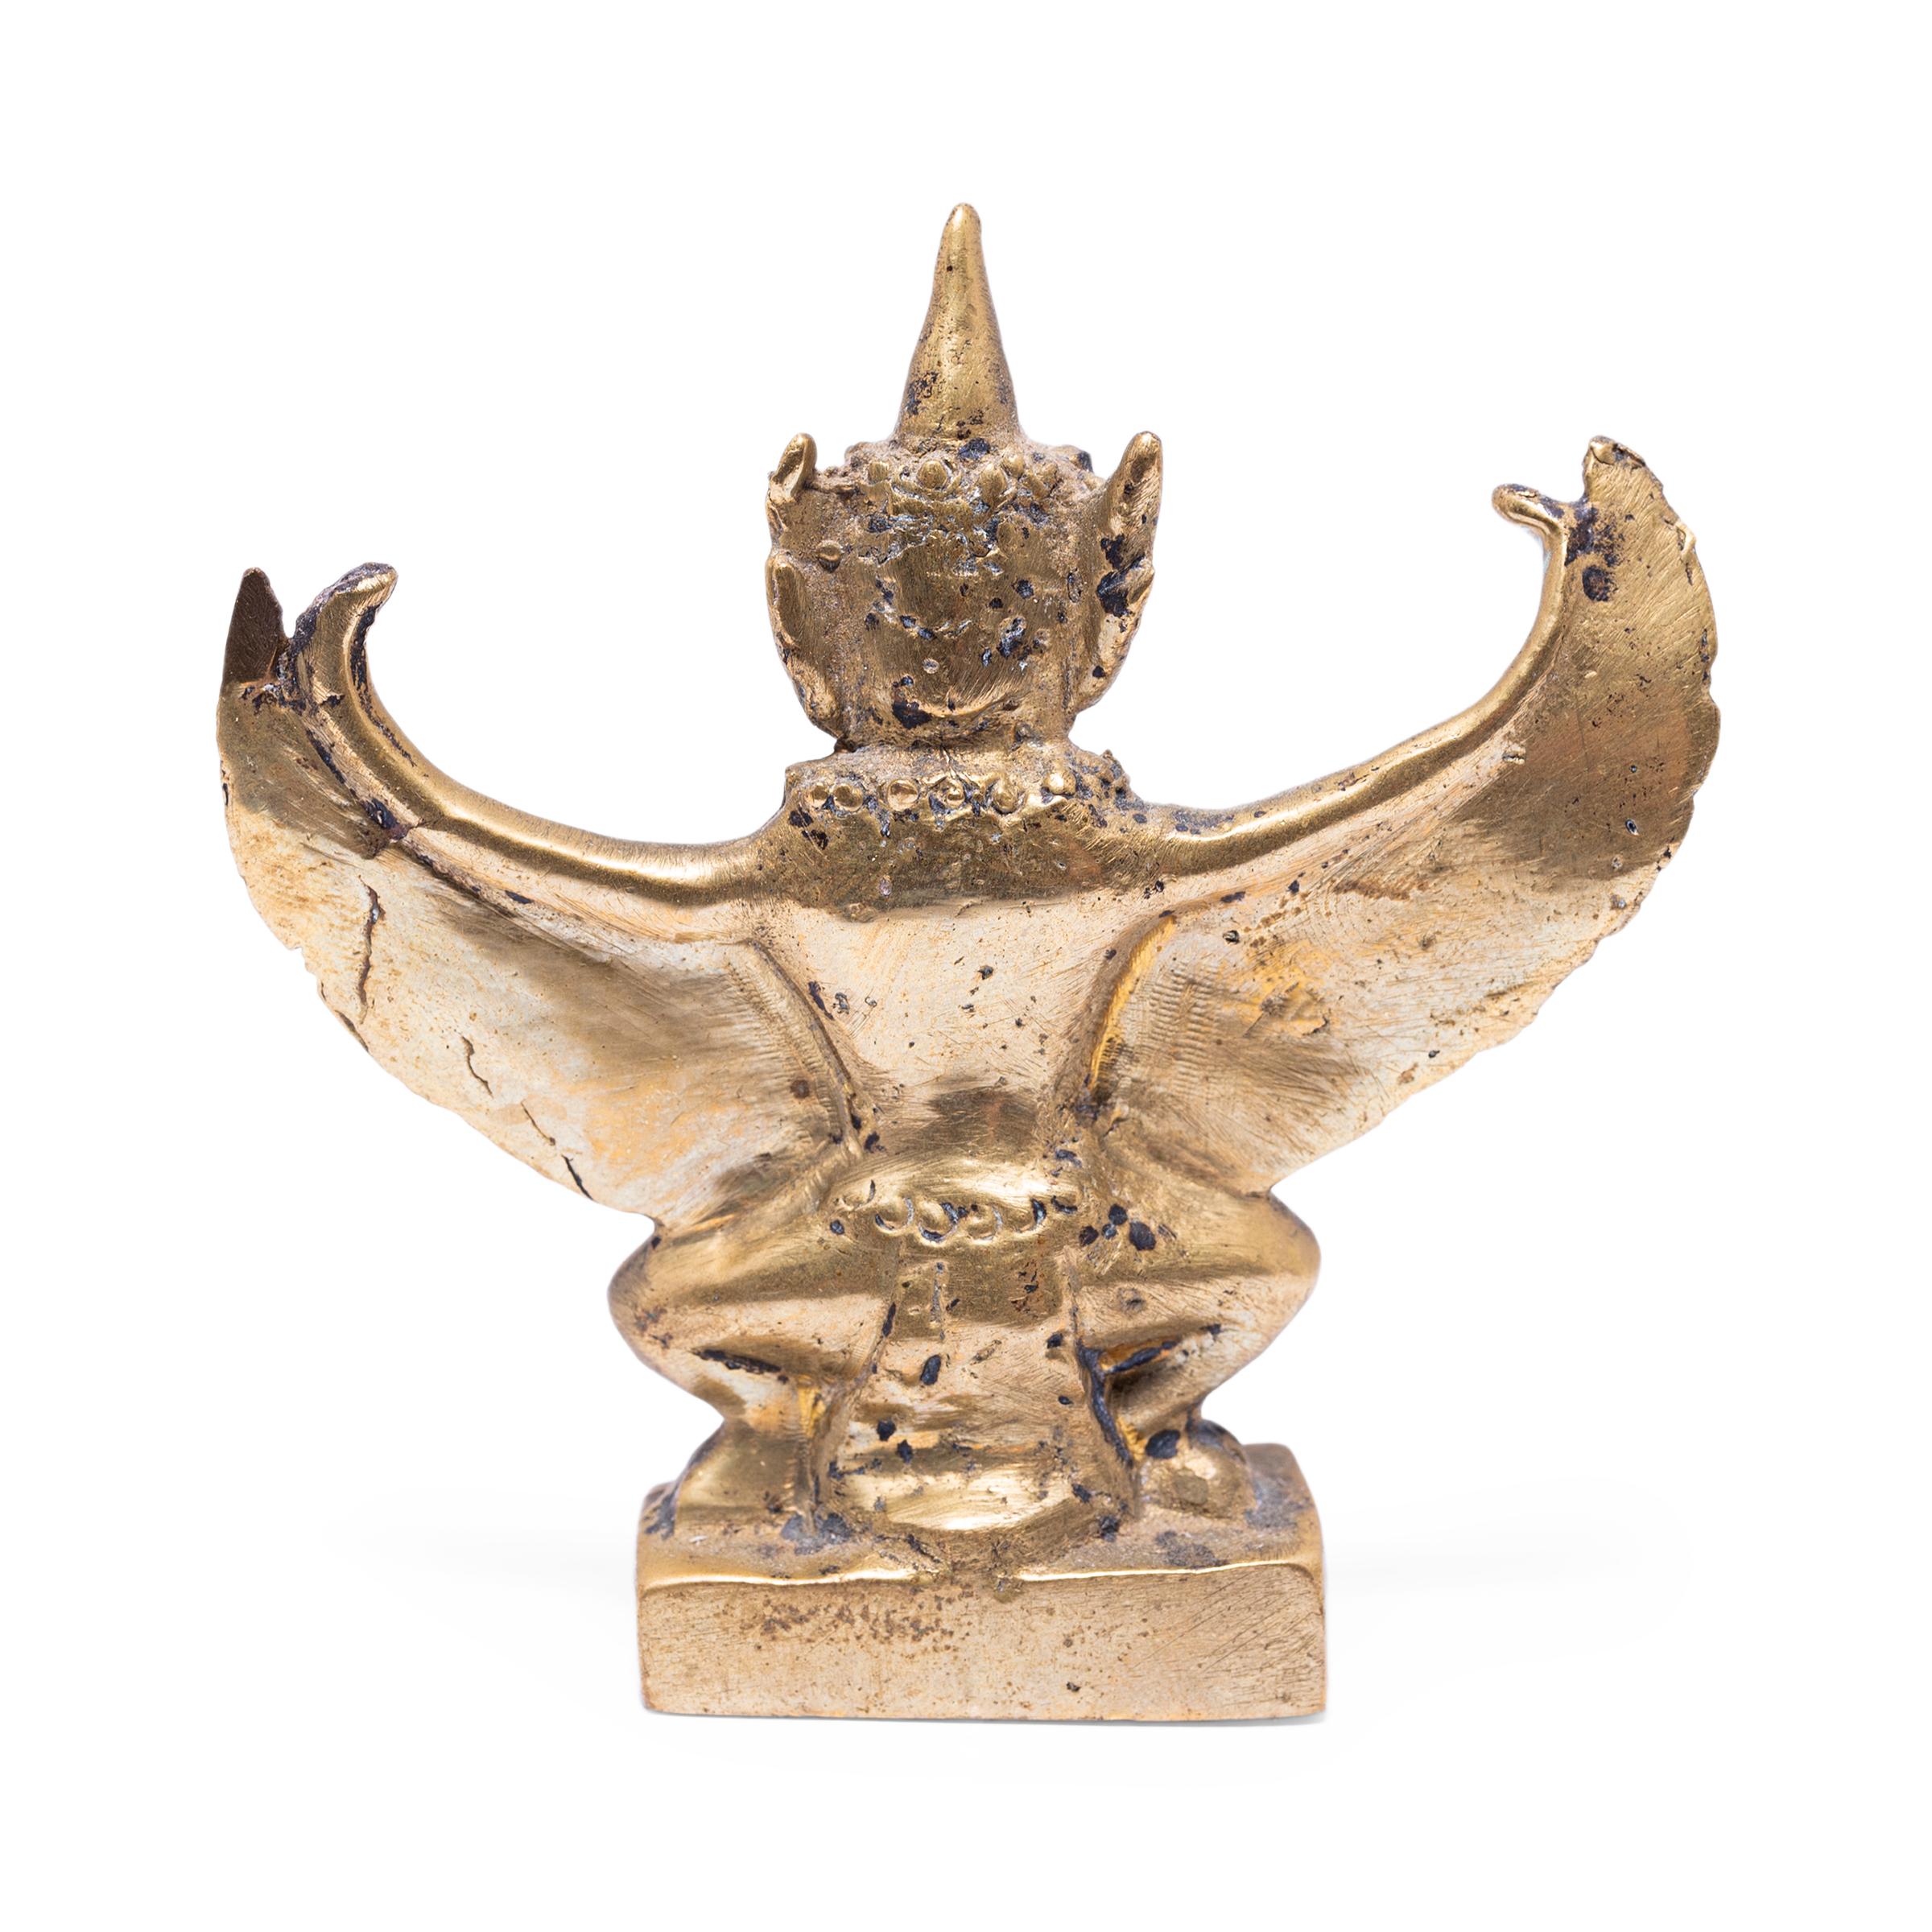 Cette petite figurine en bronze a la forme de Garuda, un demi-dieu et le roi mythique des oiseaux dans les religions hindoue et bouddhiste. Sous sa forme mi-oiseau mi-homme, Garuda est un puissant protecteur et un ennemi vigilant du serpent. Garuda